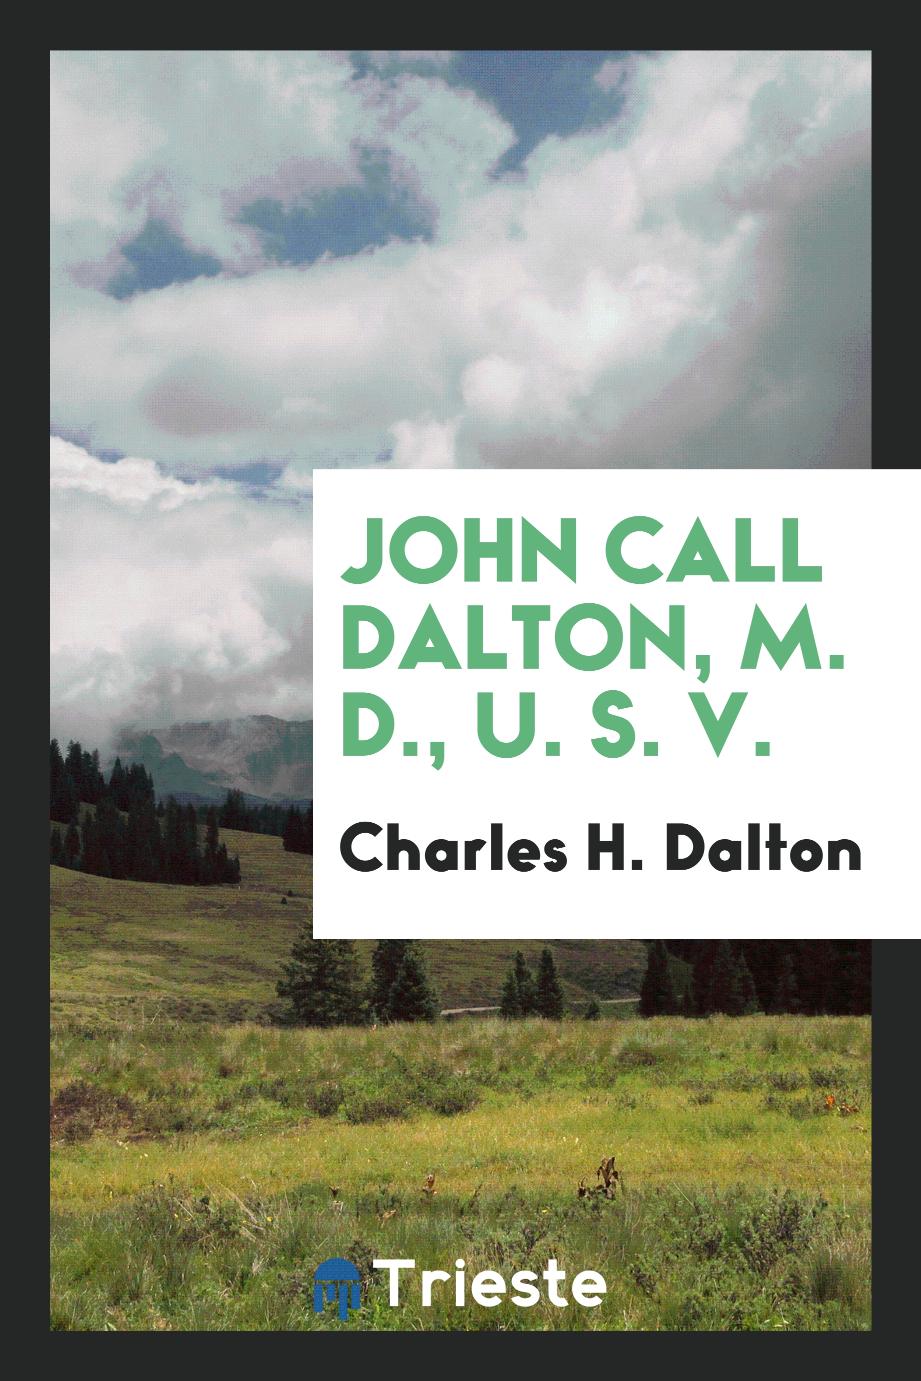 John Call Dalton, M. D., U. S. V.